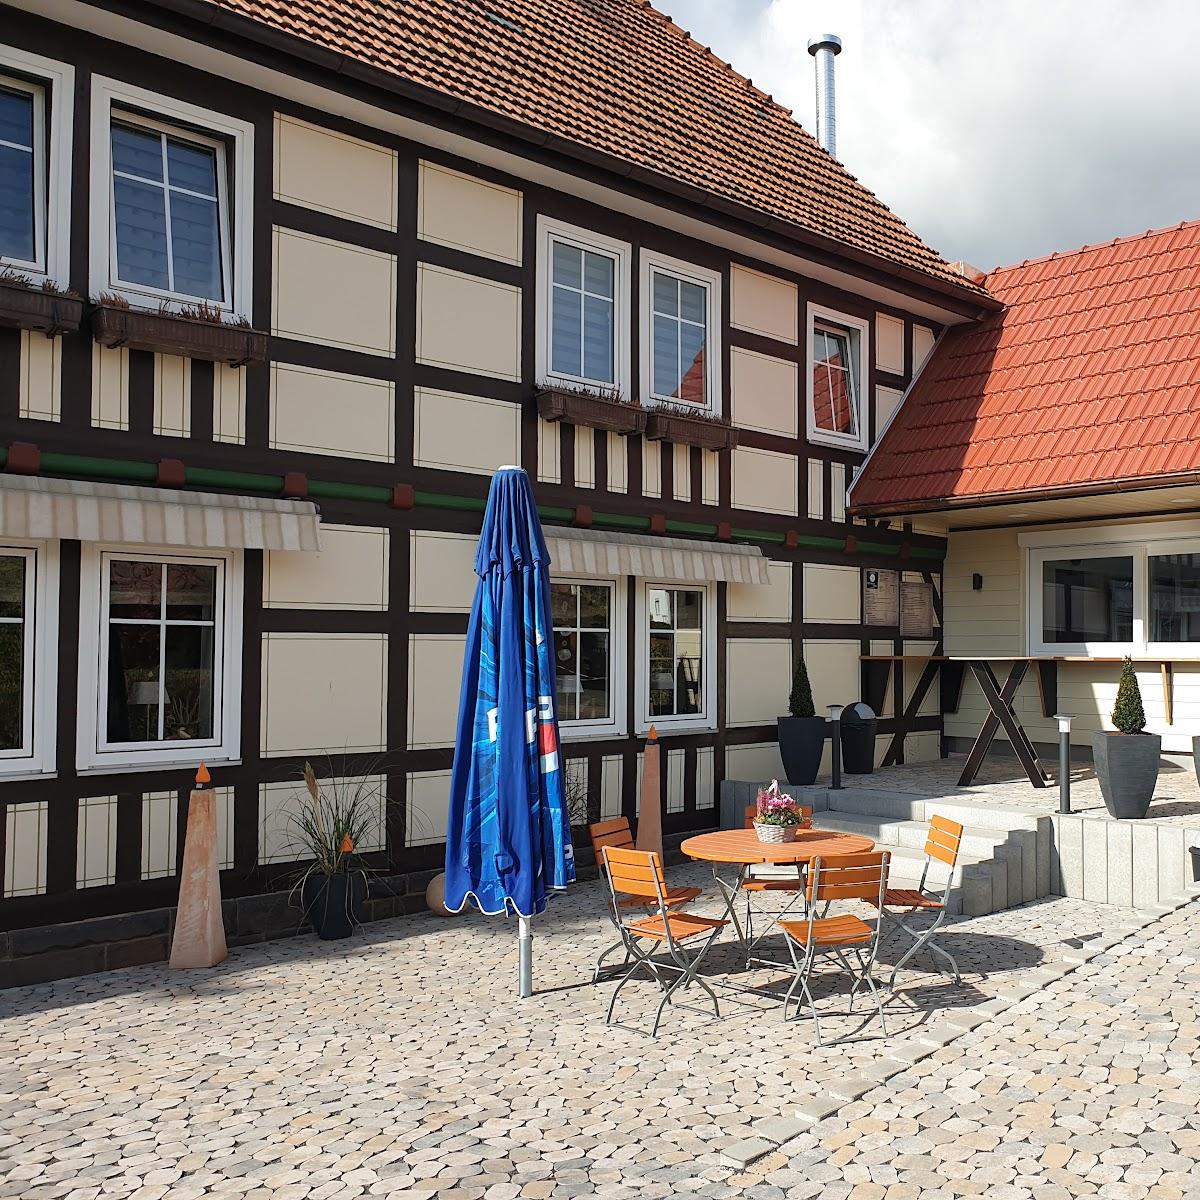 Restaurant "Rustikana Imbiss" in Kirchheim